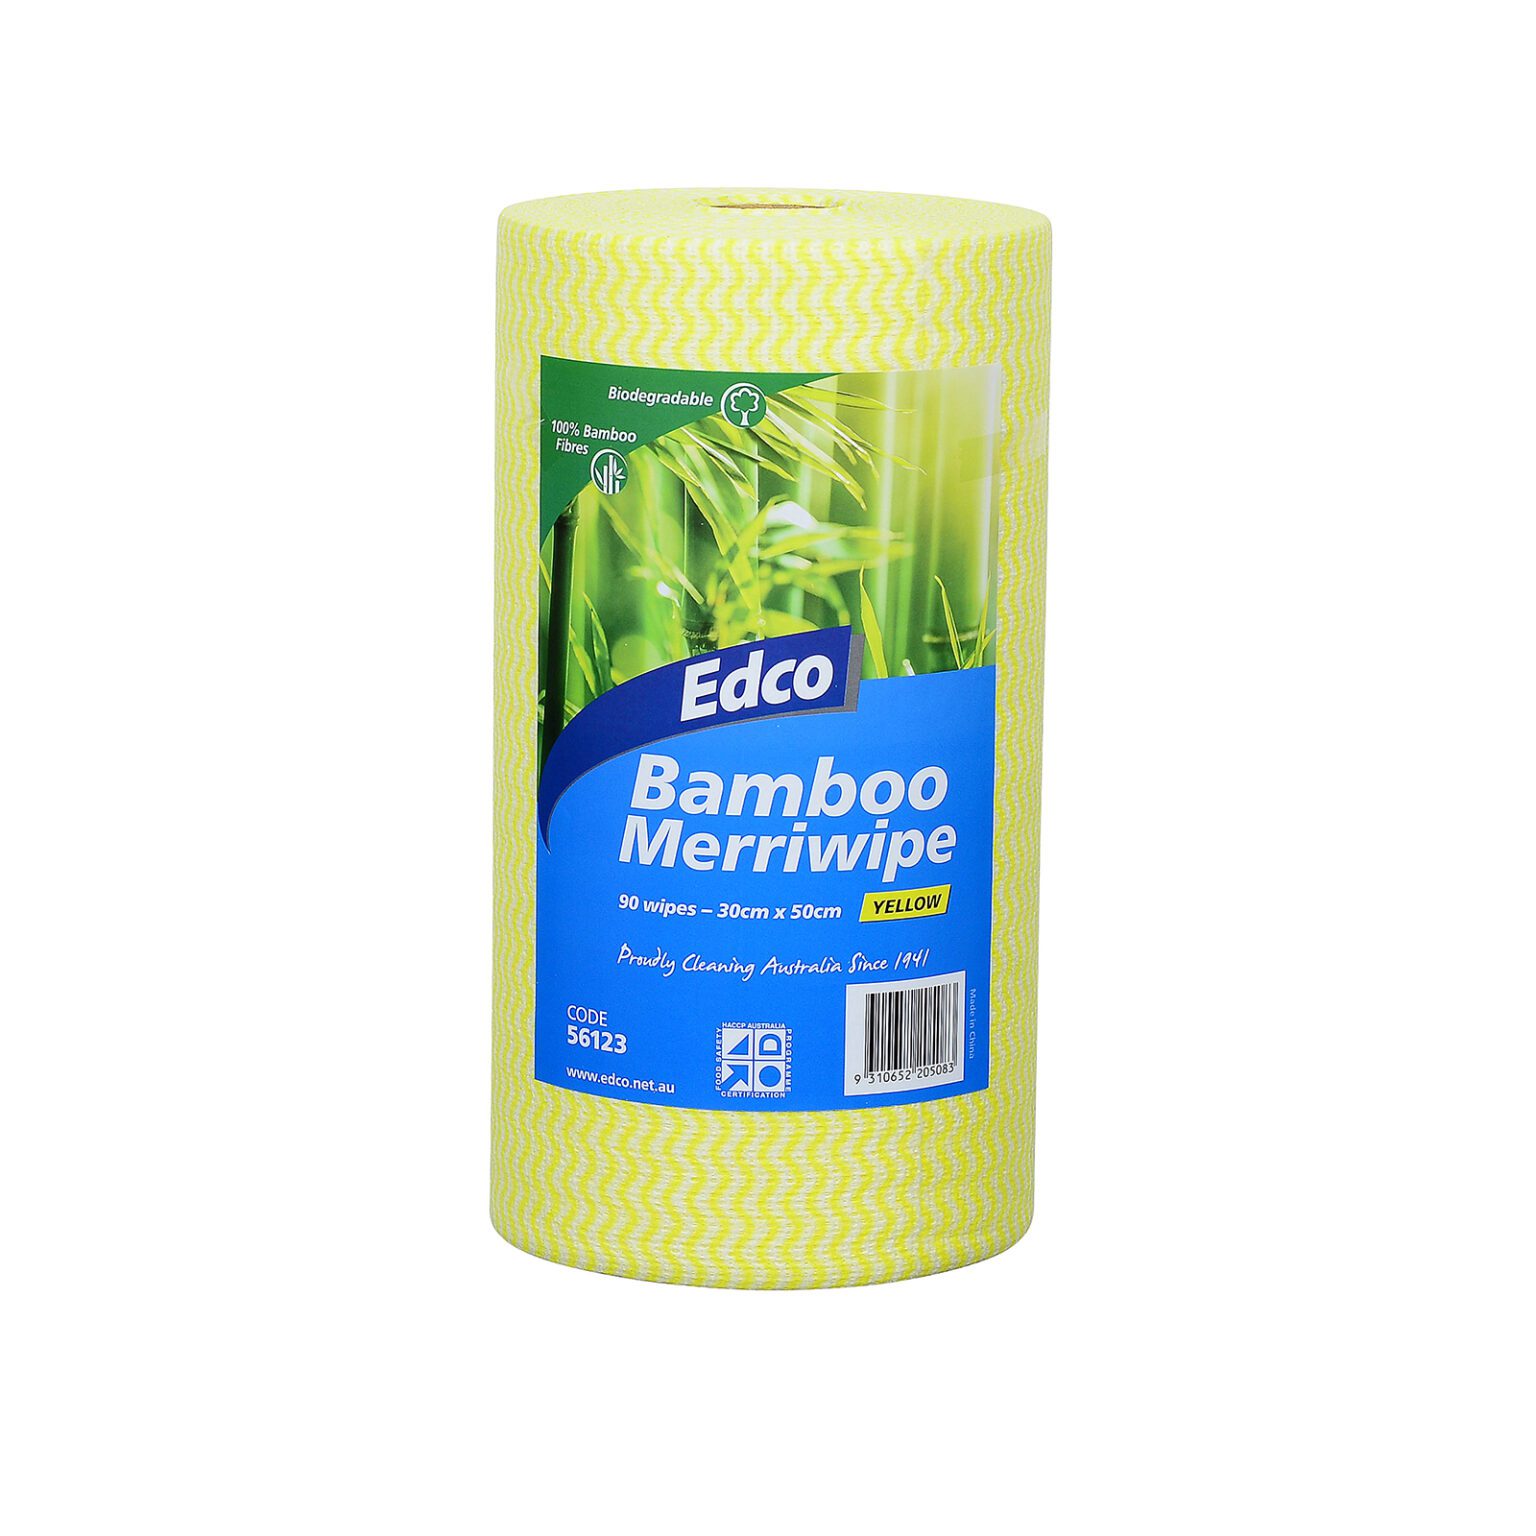 56123-Edco-Bamboo-Merriwipe-Yellow-IP